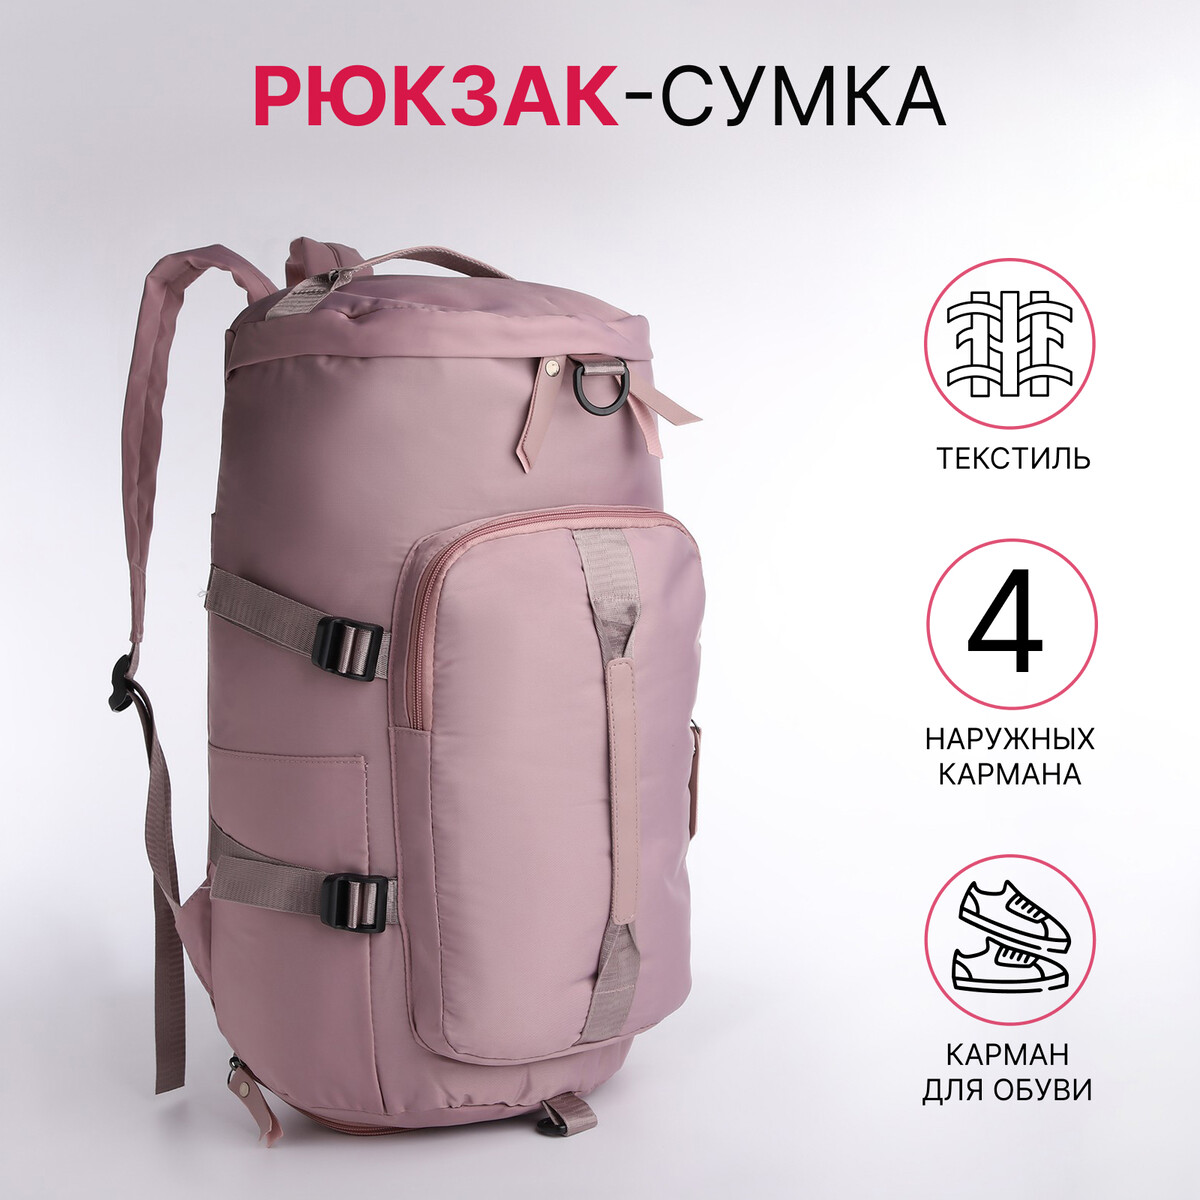 Рюкзак-сумка на молнии, 4 наружных кармана, отделение для обуви, цвет розовый No brand